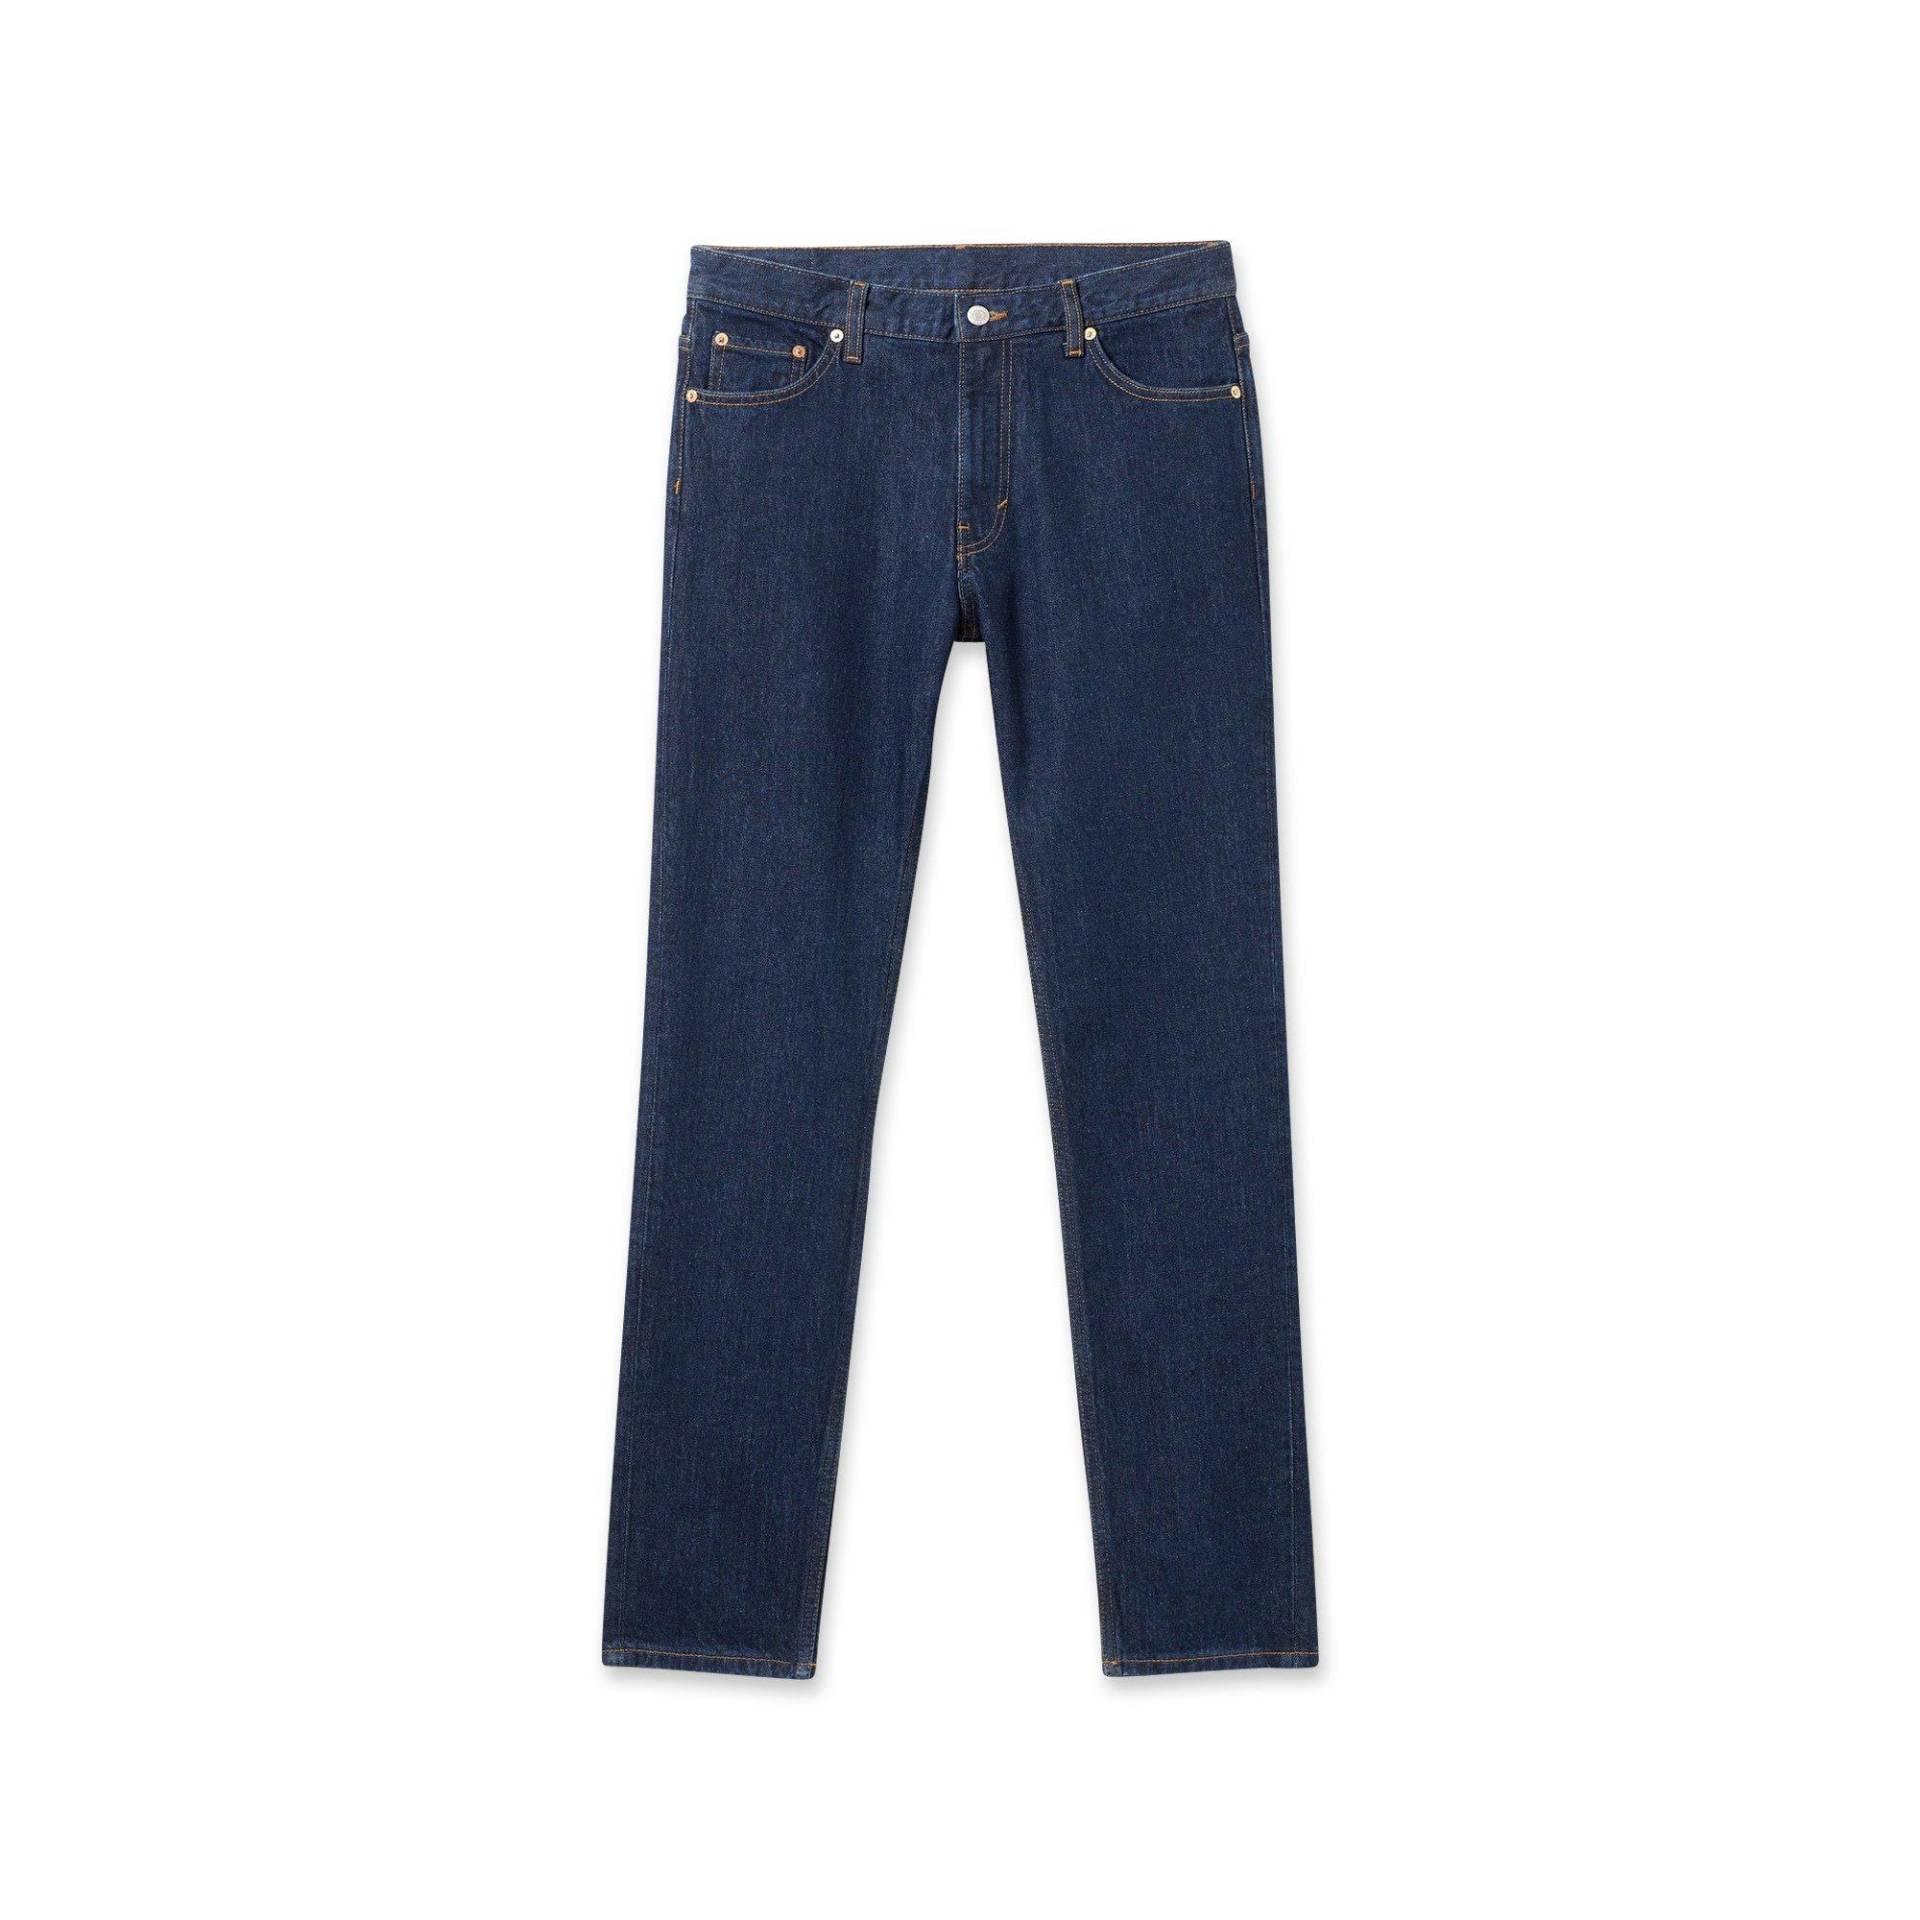 Jeans, Tapered Fit Herren Blau L32/W30 von WEEKDAY